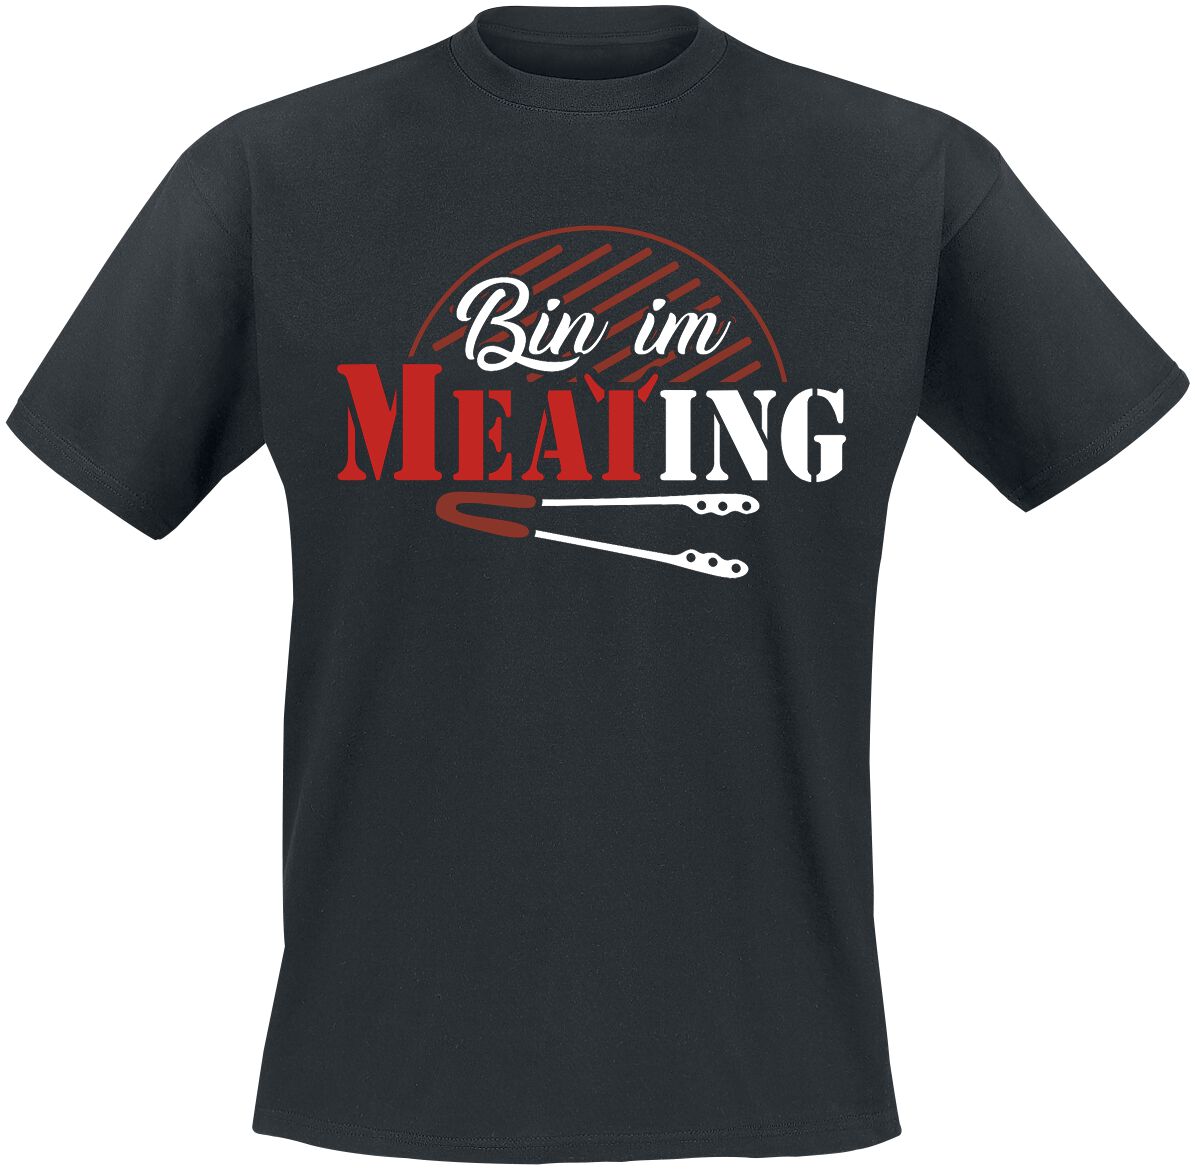 Food T-Shirt - Bin im Meating - S bis 5XL - für Männer - Größe XL - schwarz